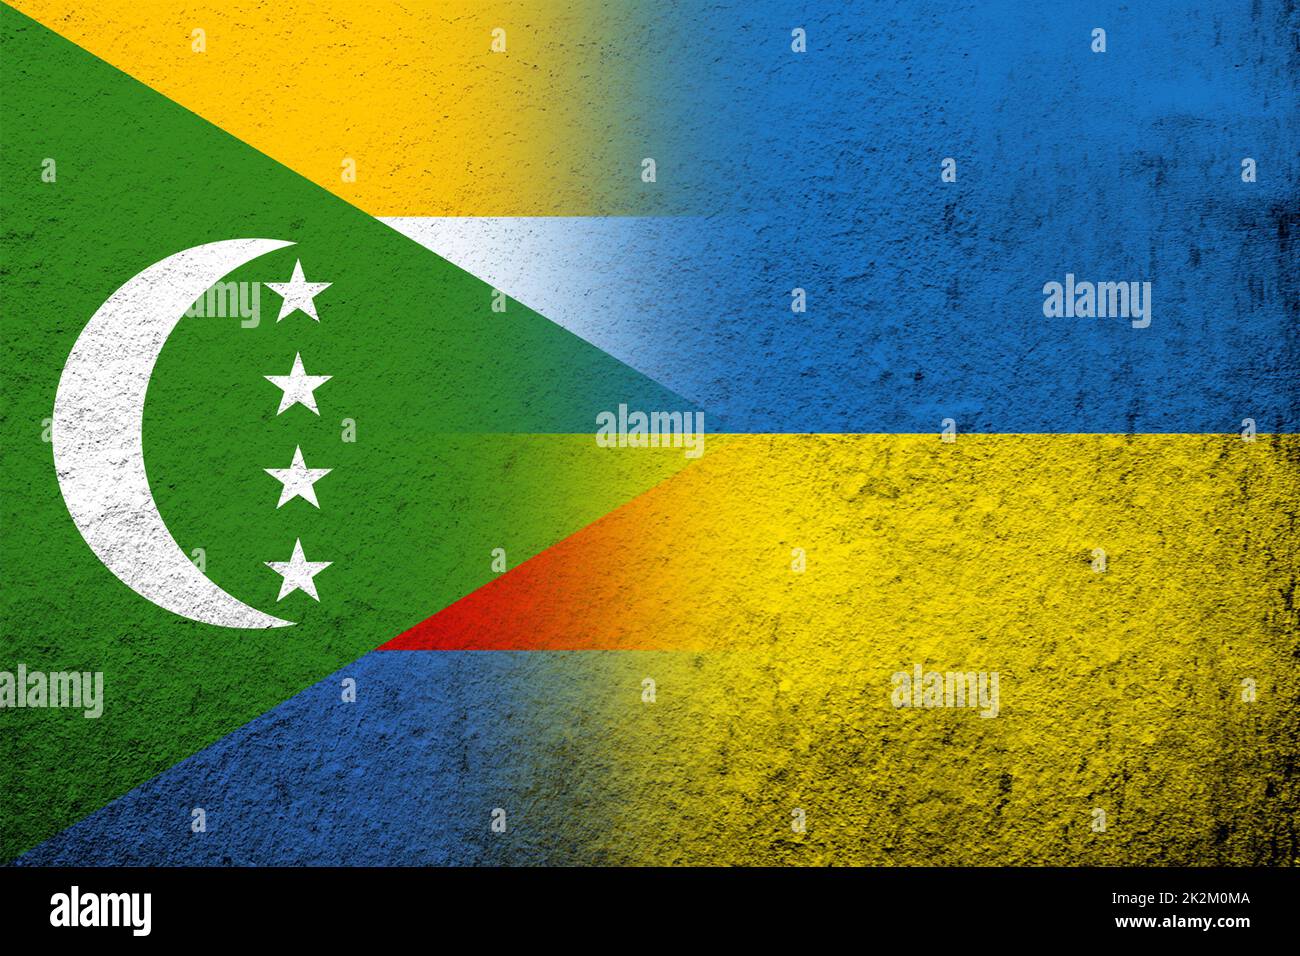 L'Union des Comores drapeau national avec drapeau national de l'Ukraine. Grunge l'arrière-plan Banque D'Images